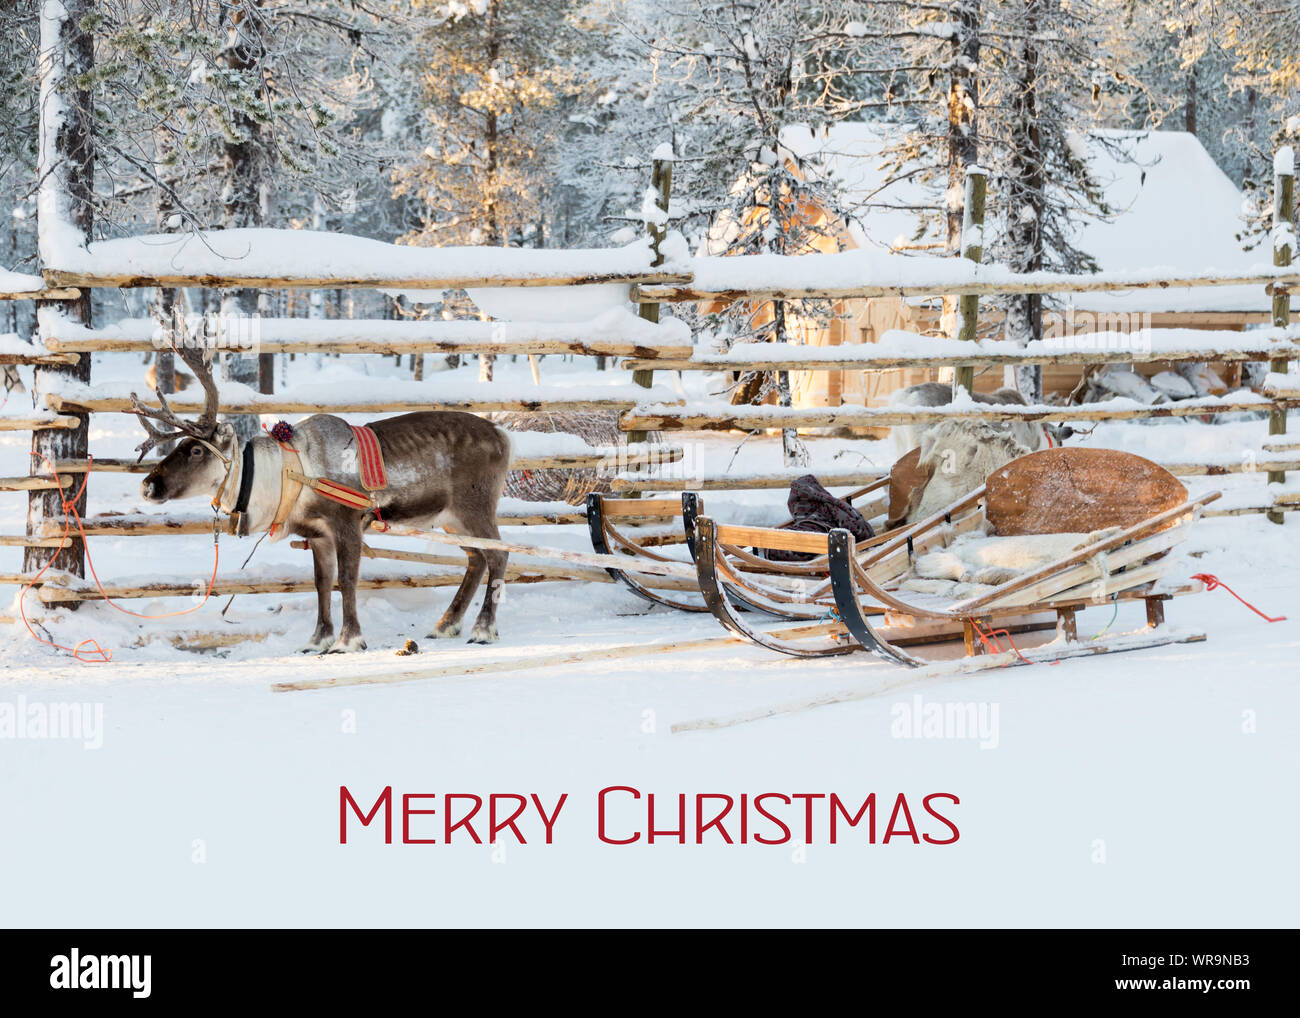 Tarjeta de navidad, trineo tirado por renos esperando a Santa en invierno, texto Feliz Navidad Foto de stock